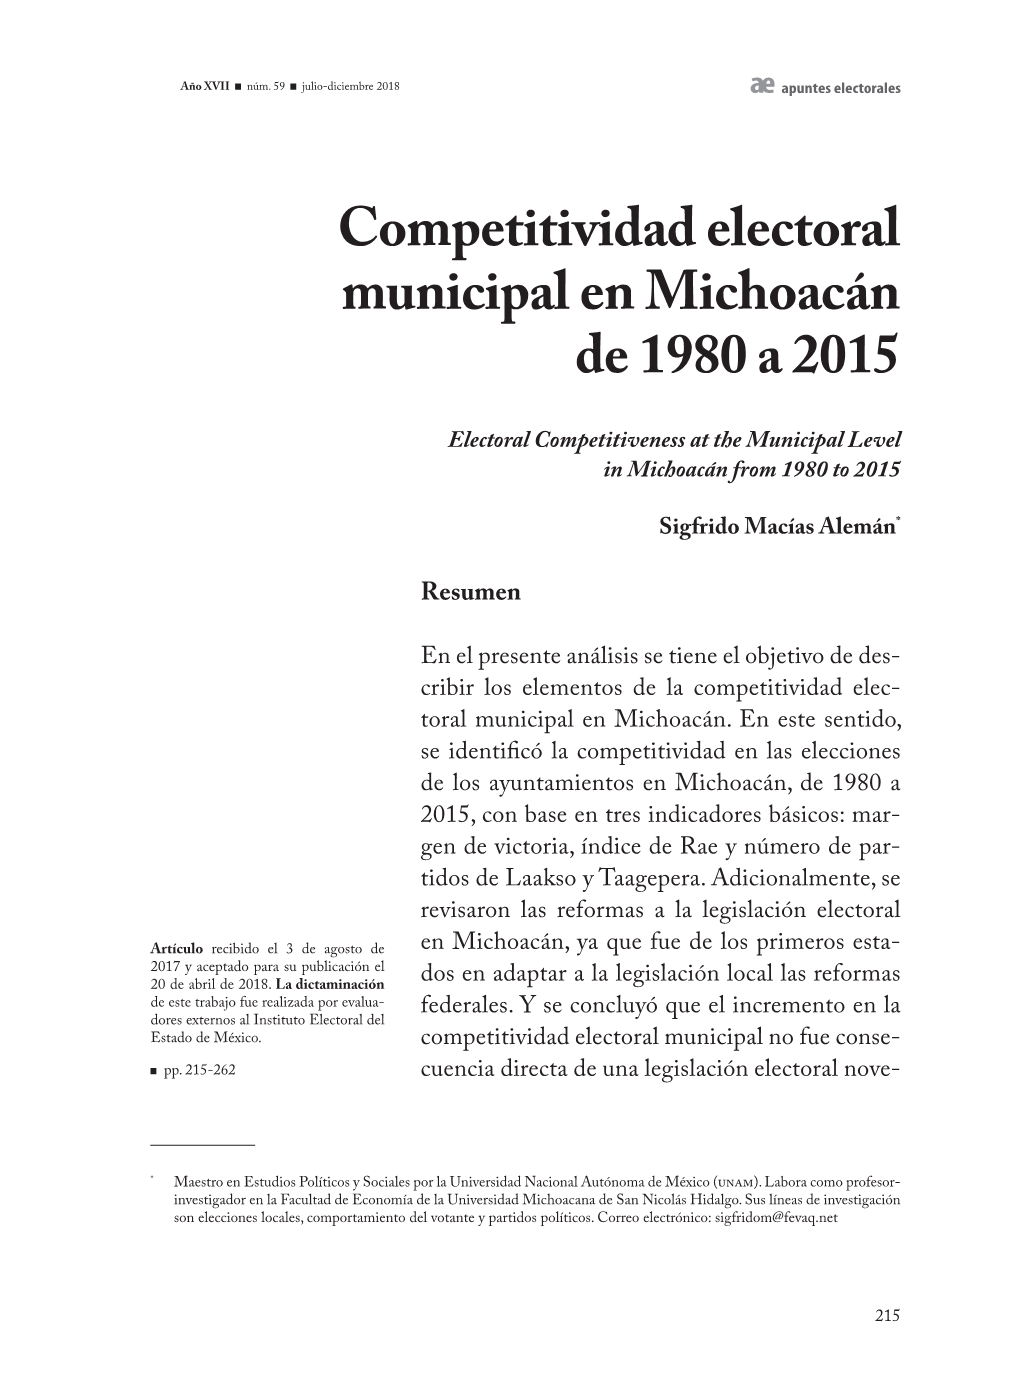 Competitividad Electoral Municipal En Michoacán De 1980 a 2015